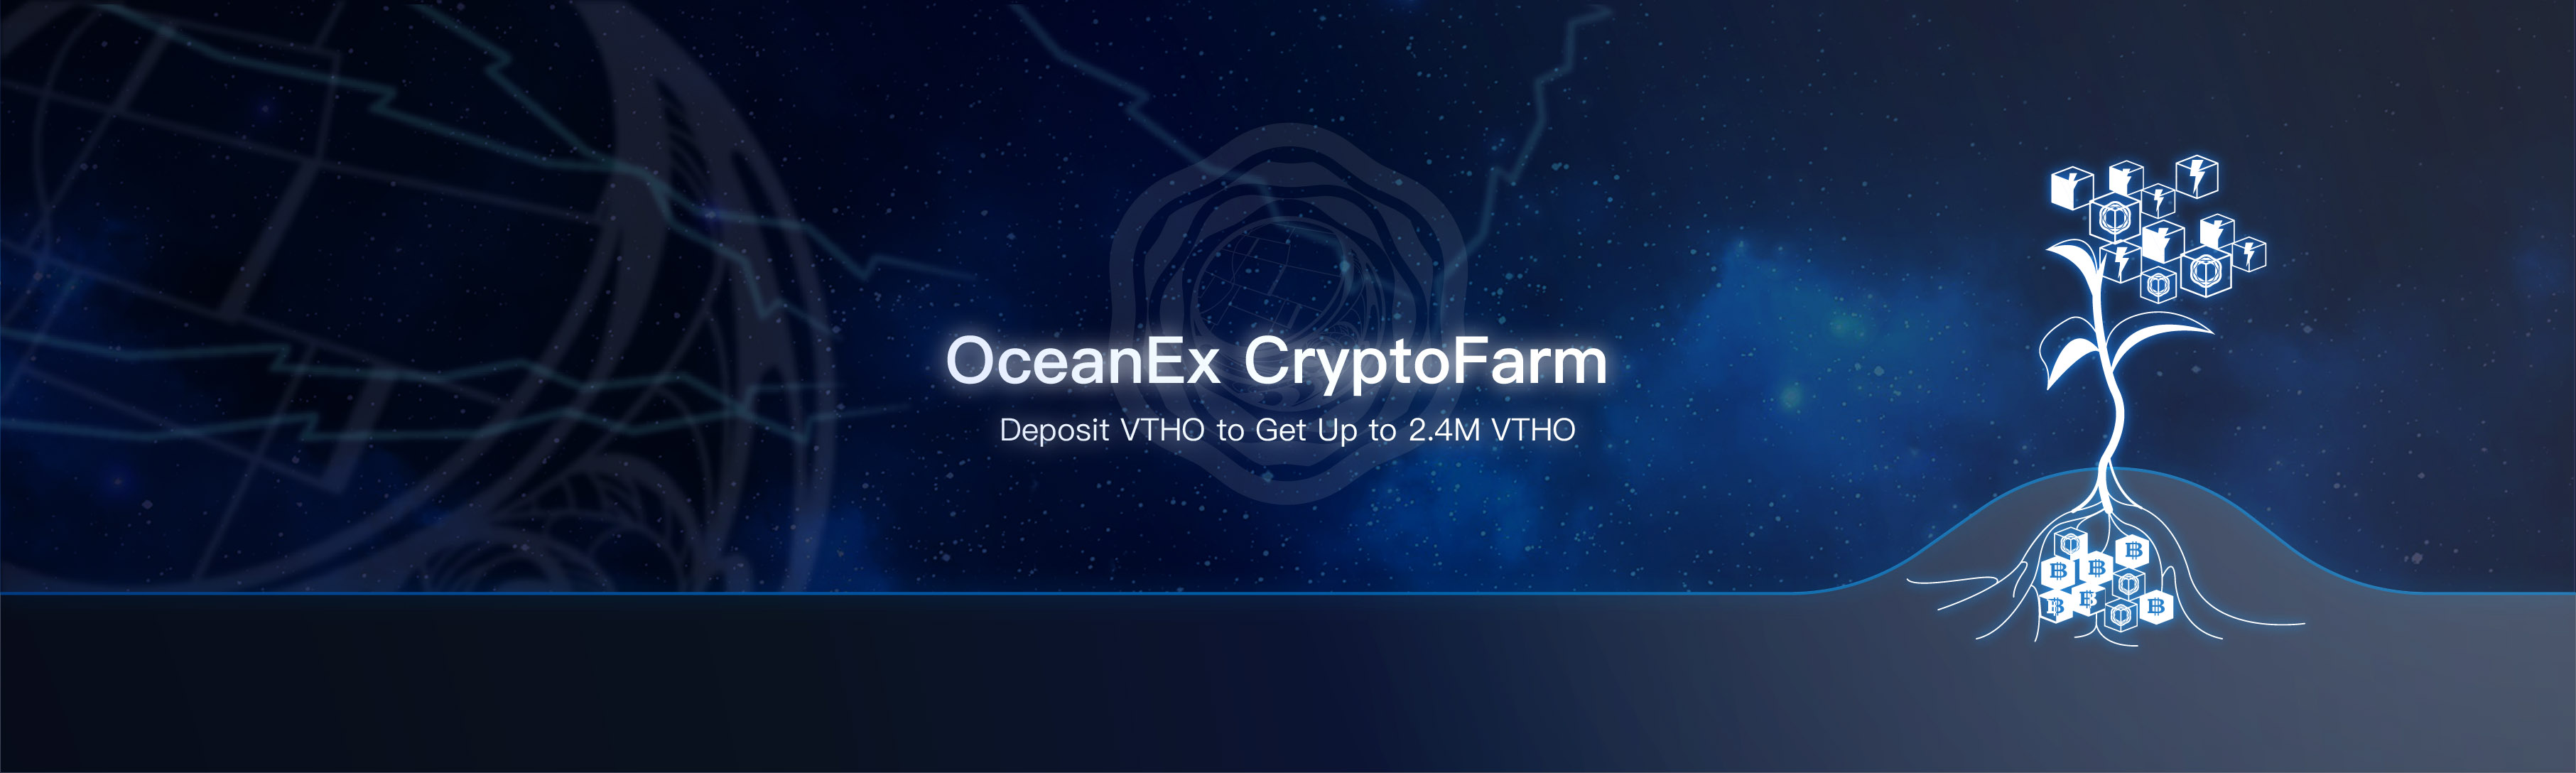 OceanEx CryptoFarm Deposit VTHO to Get Up to 2.4M VTHO